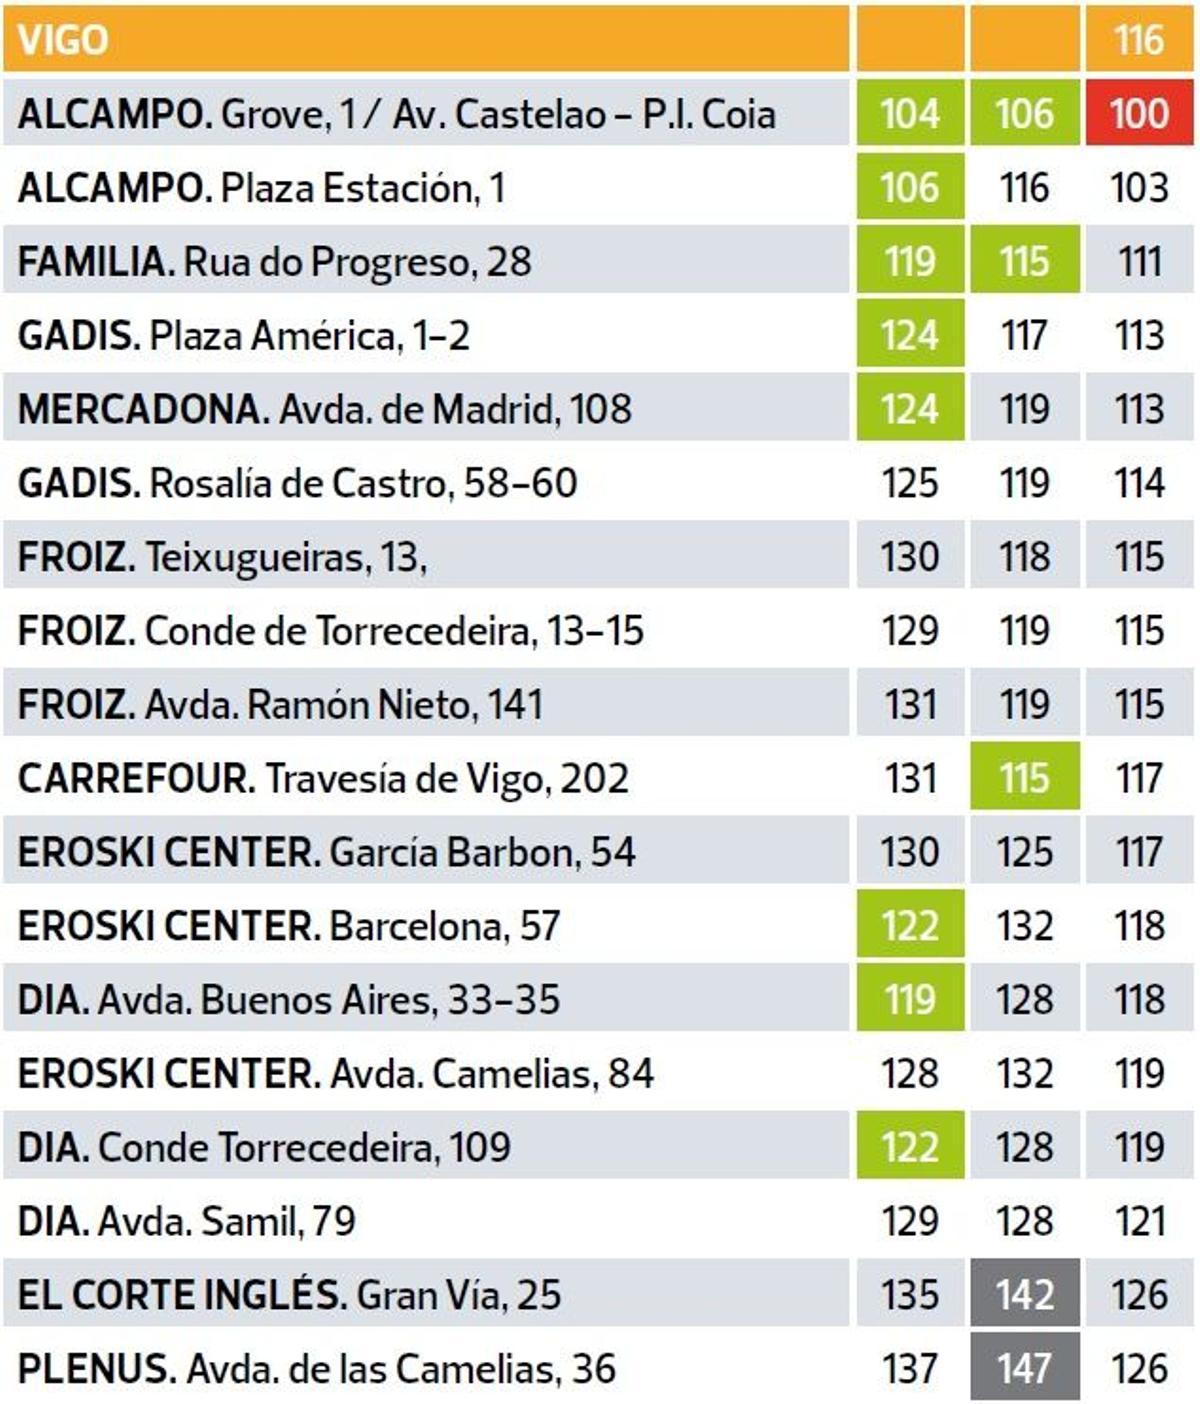 Listado de supermercados más baratos y caros de Vigo según el informe de la OCU.